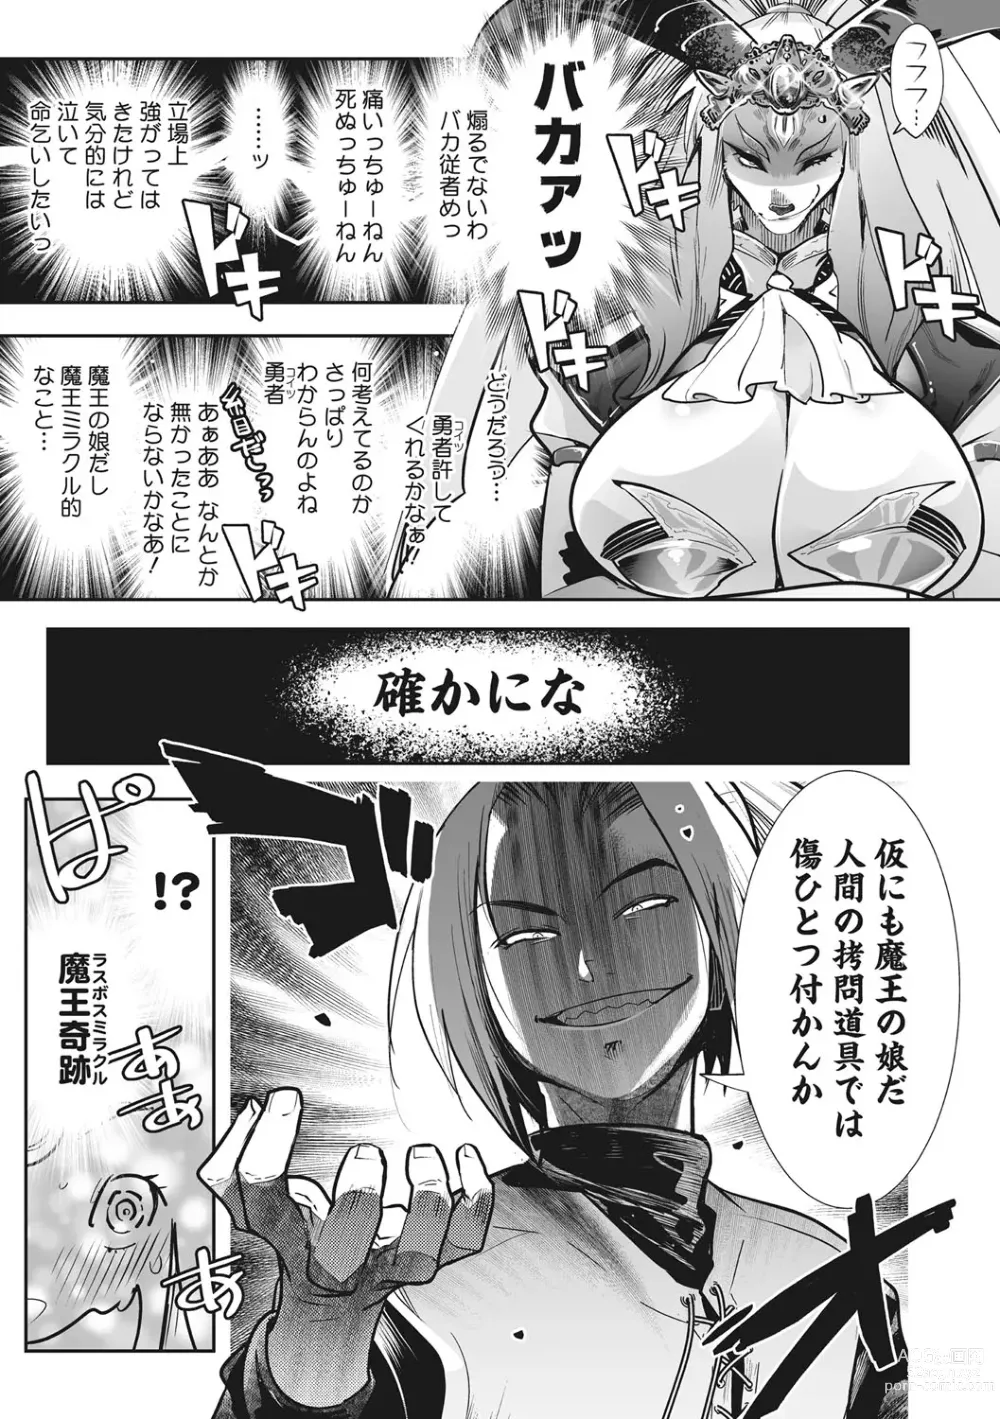 Page 12 of manga Kemono to Koishite Nani ga Warui!